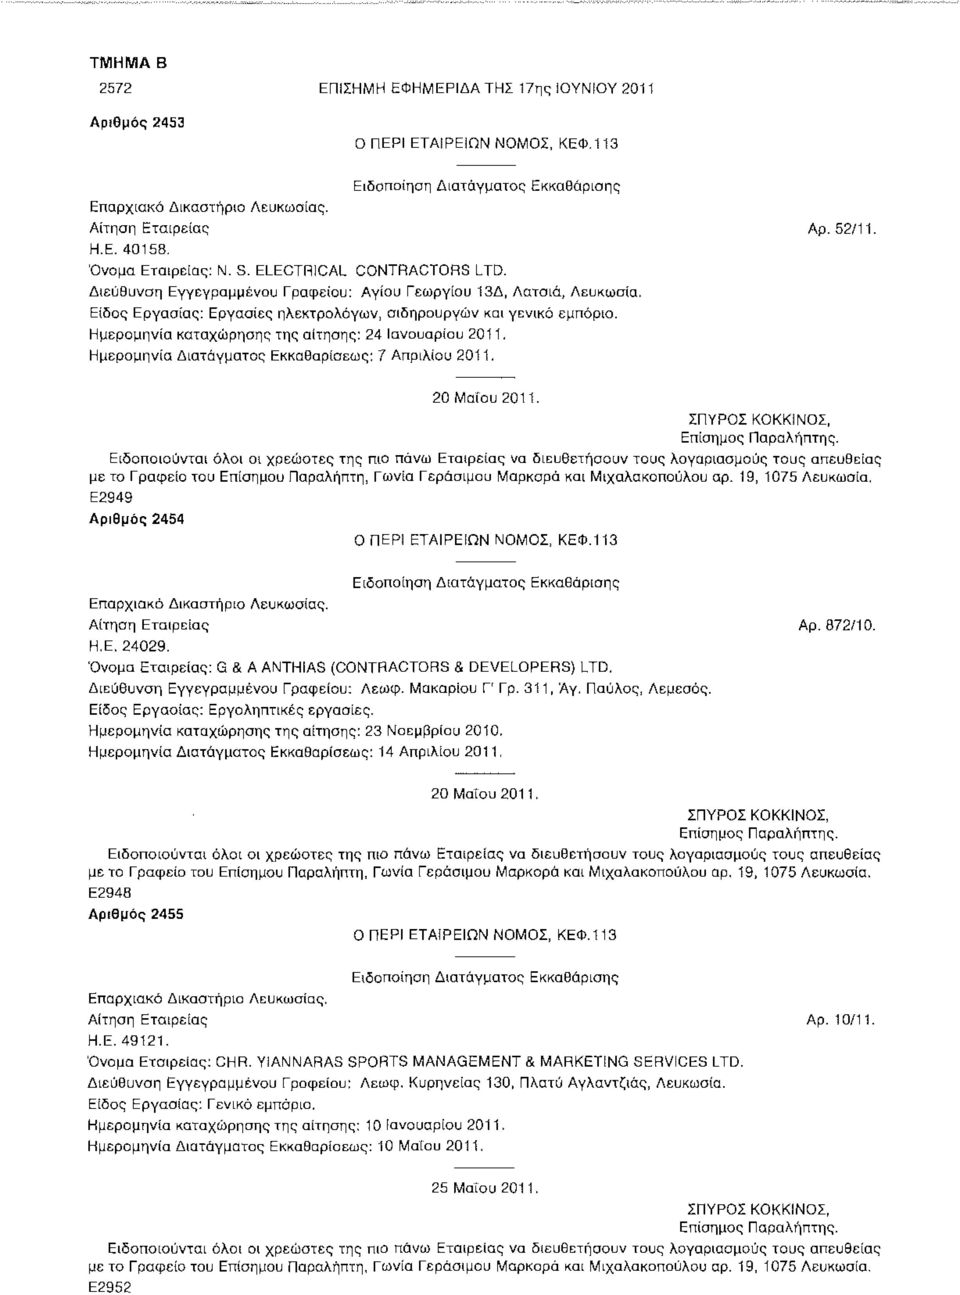 Ημερομηνία Διατάγματος Εκκαθαρίσεως: 7 Απριλίου 2011. 20 Μαίου 2011. με το Γραφείο του Επίσημου Παραλήπτη, Γωνία Γεράσιμου Μαρκορα και Μιχαλακοπουλου αρ. 19, 1075 Λευκωσία.